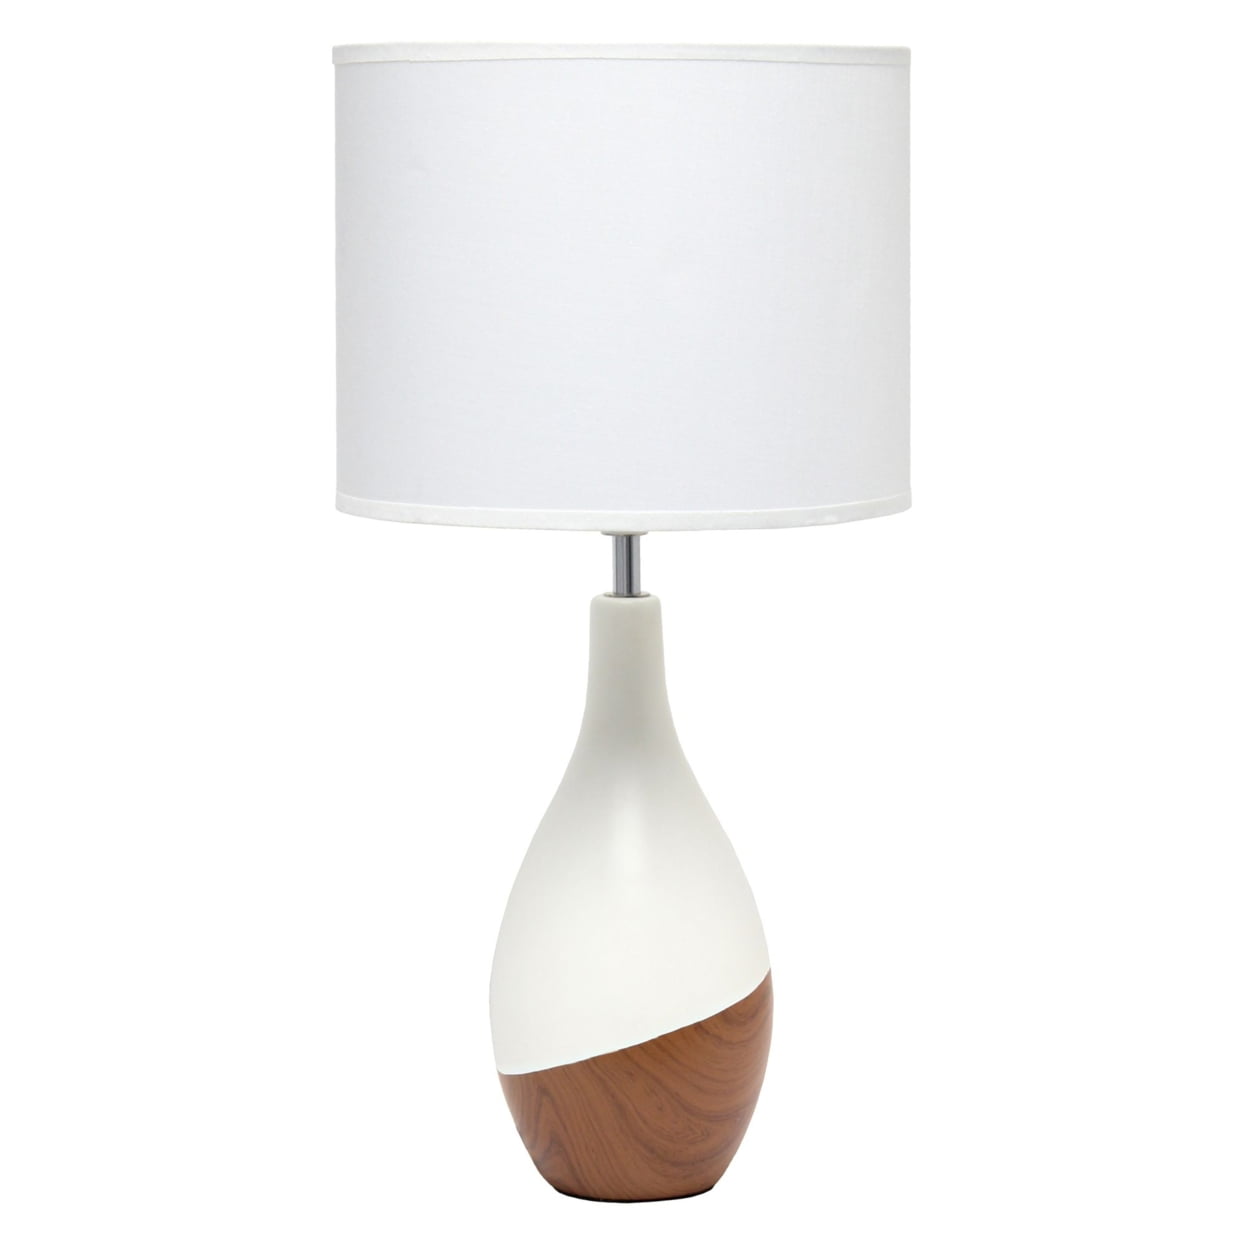 Simple Designs Strikers Basic Table Lamp, Dark Wood